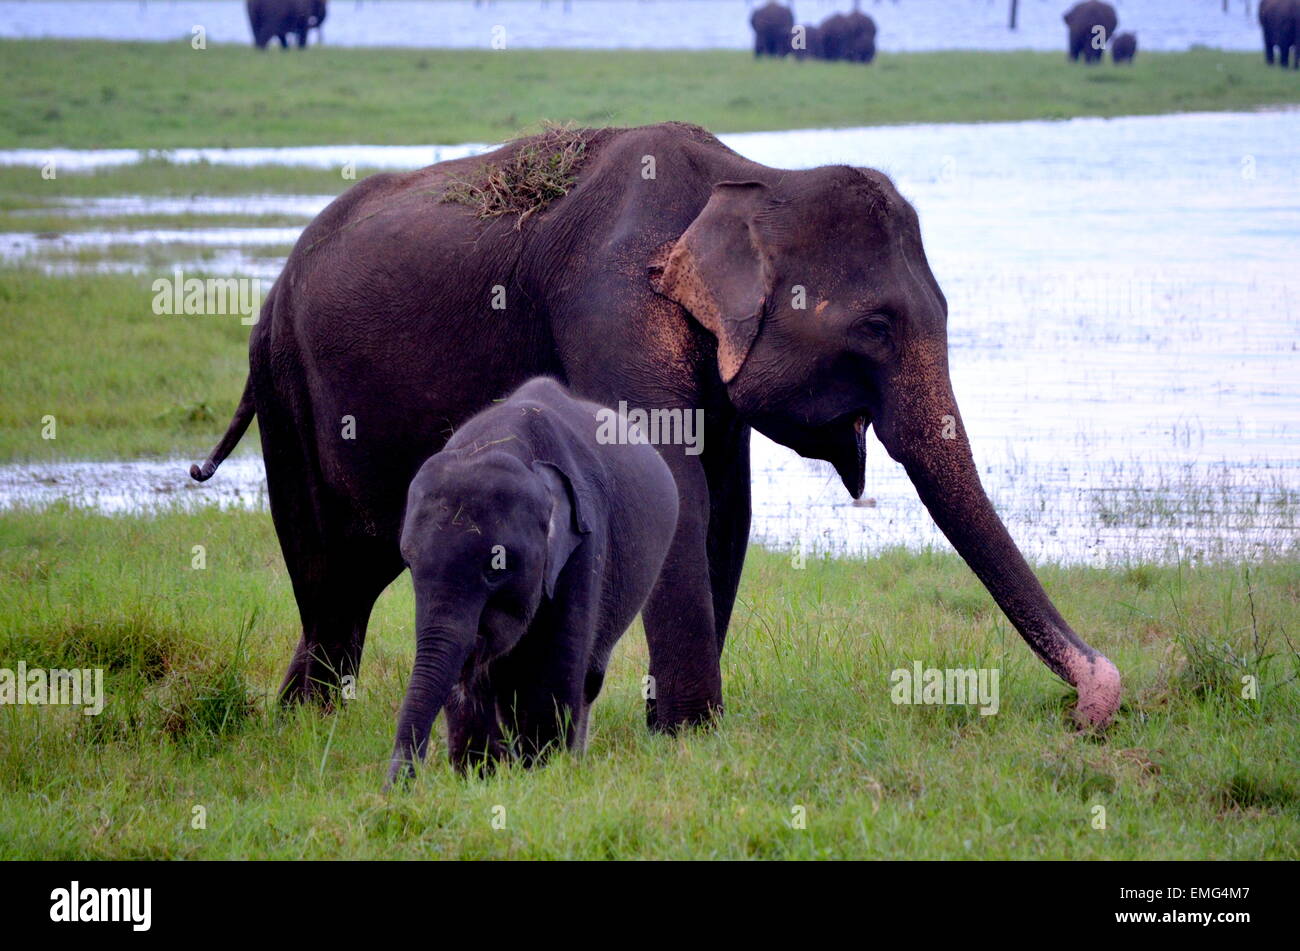 Maman éléphant avec son bébé éléphant dans la nature chaque maman est toujours près de son petit chiot pour la protéger Banque D'Images